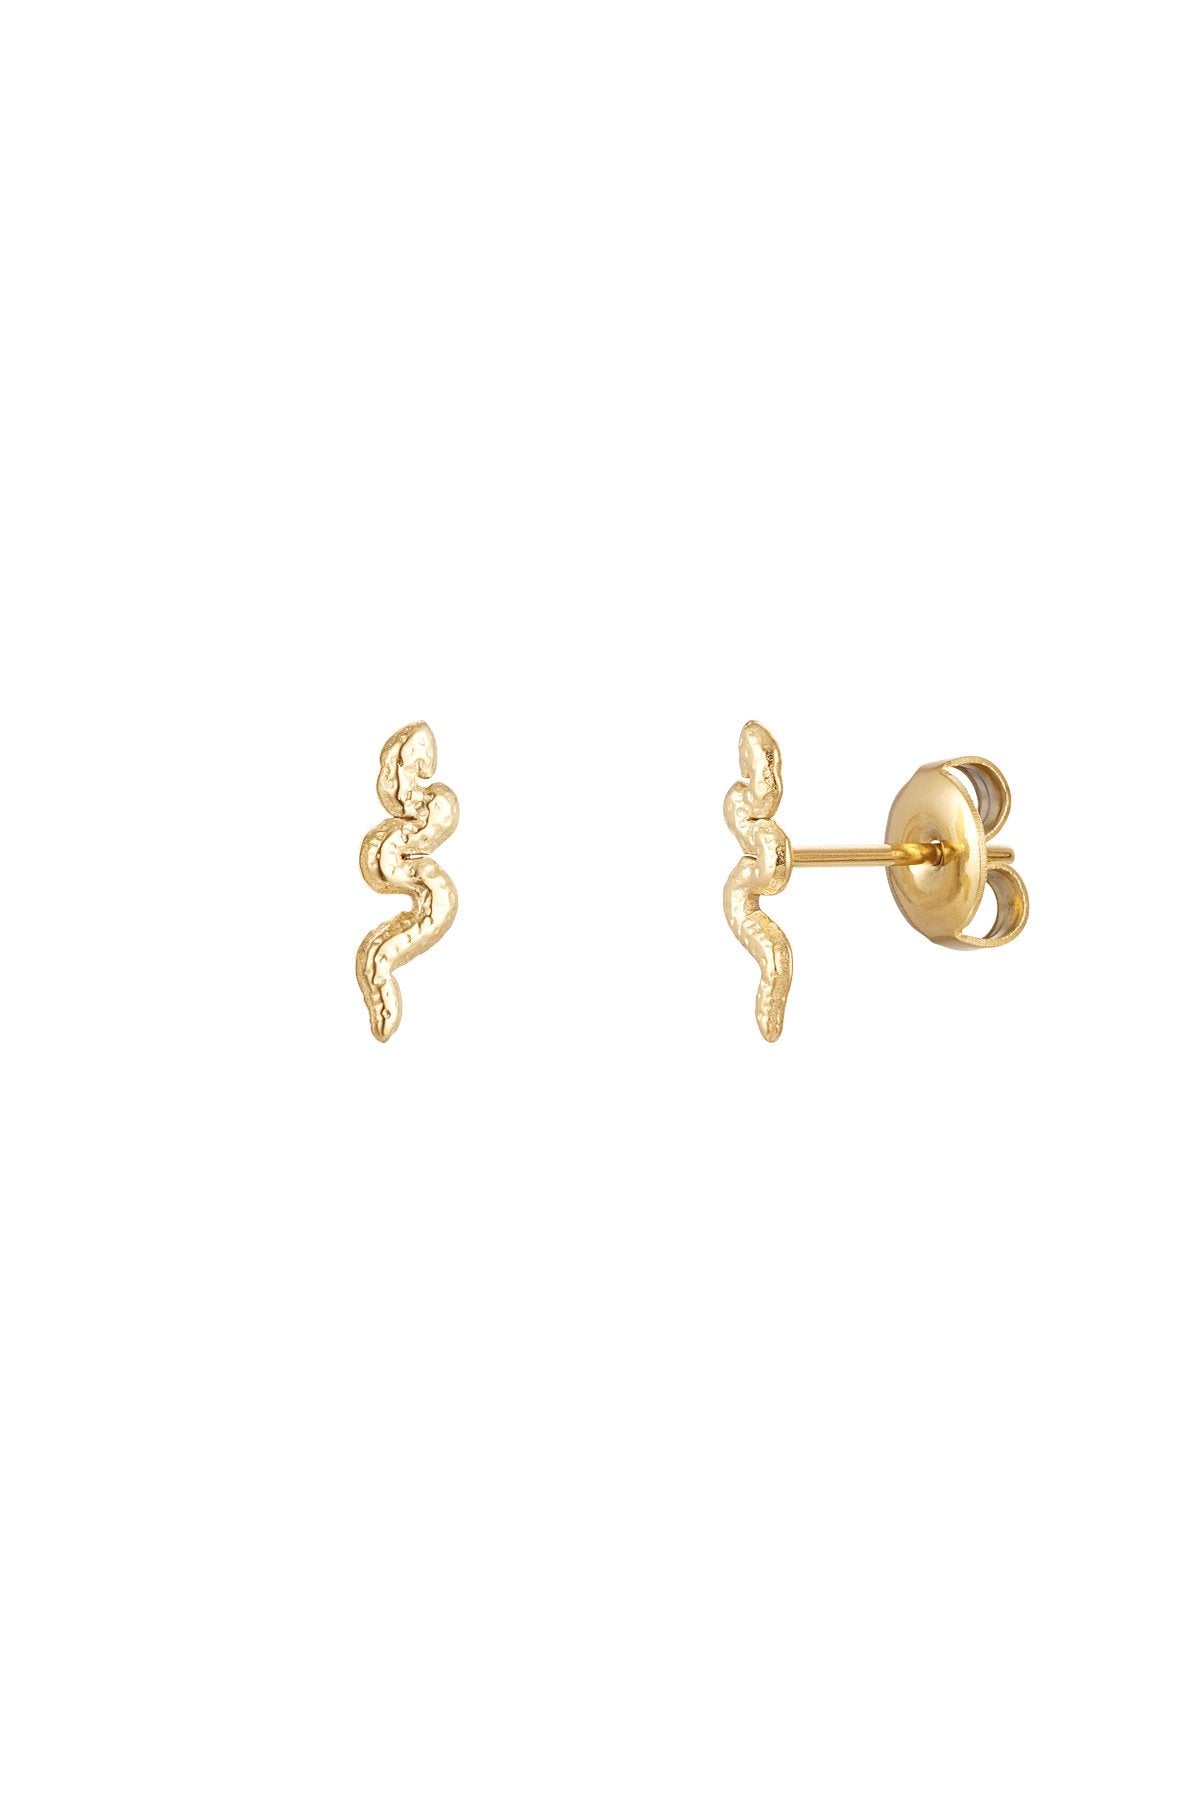 Earrings snake stainless steel gold